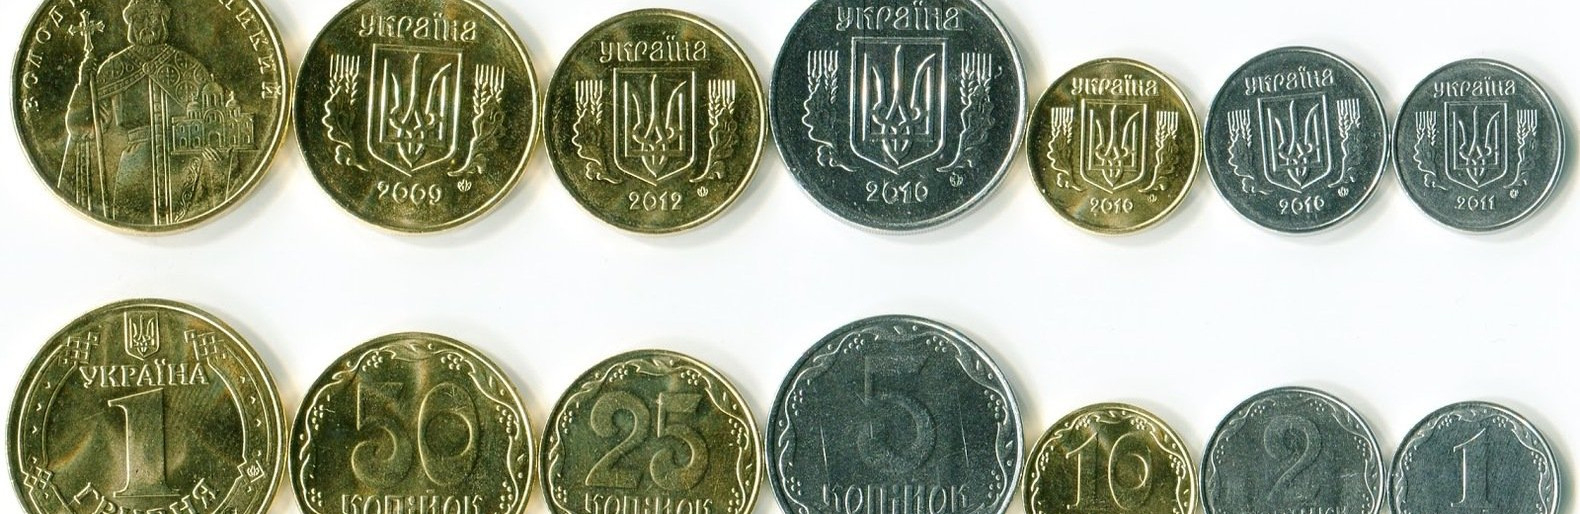 Славянск получит юбилейную монету